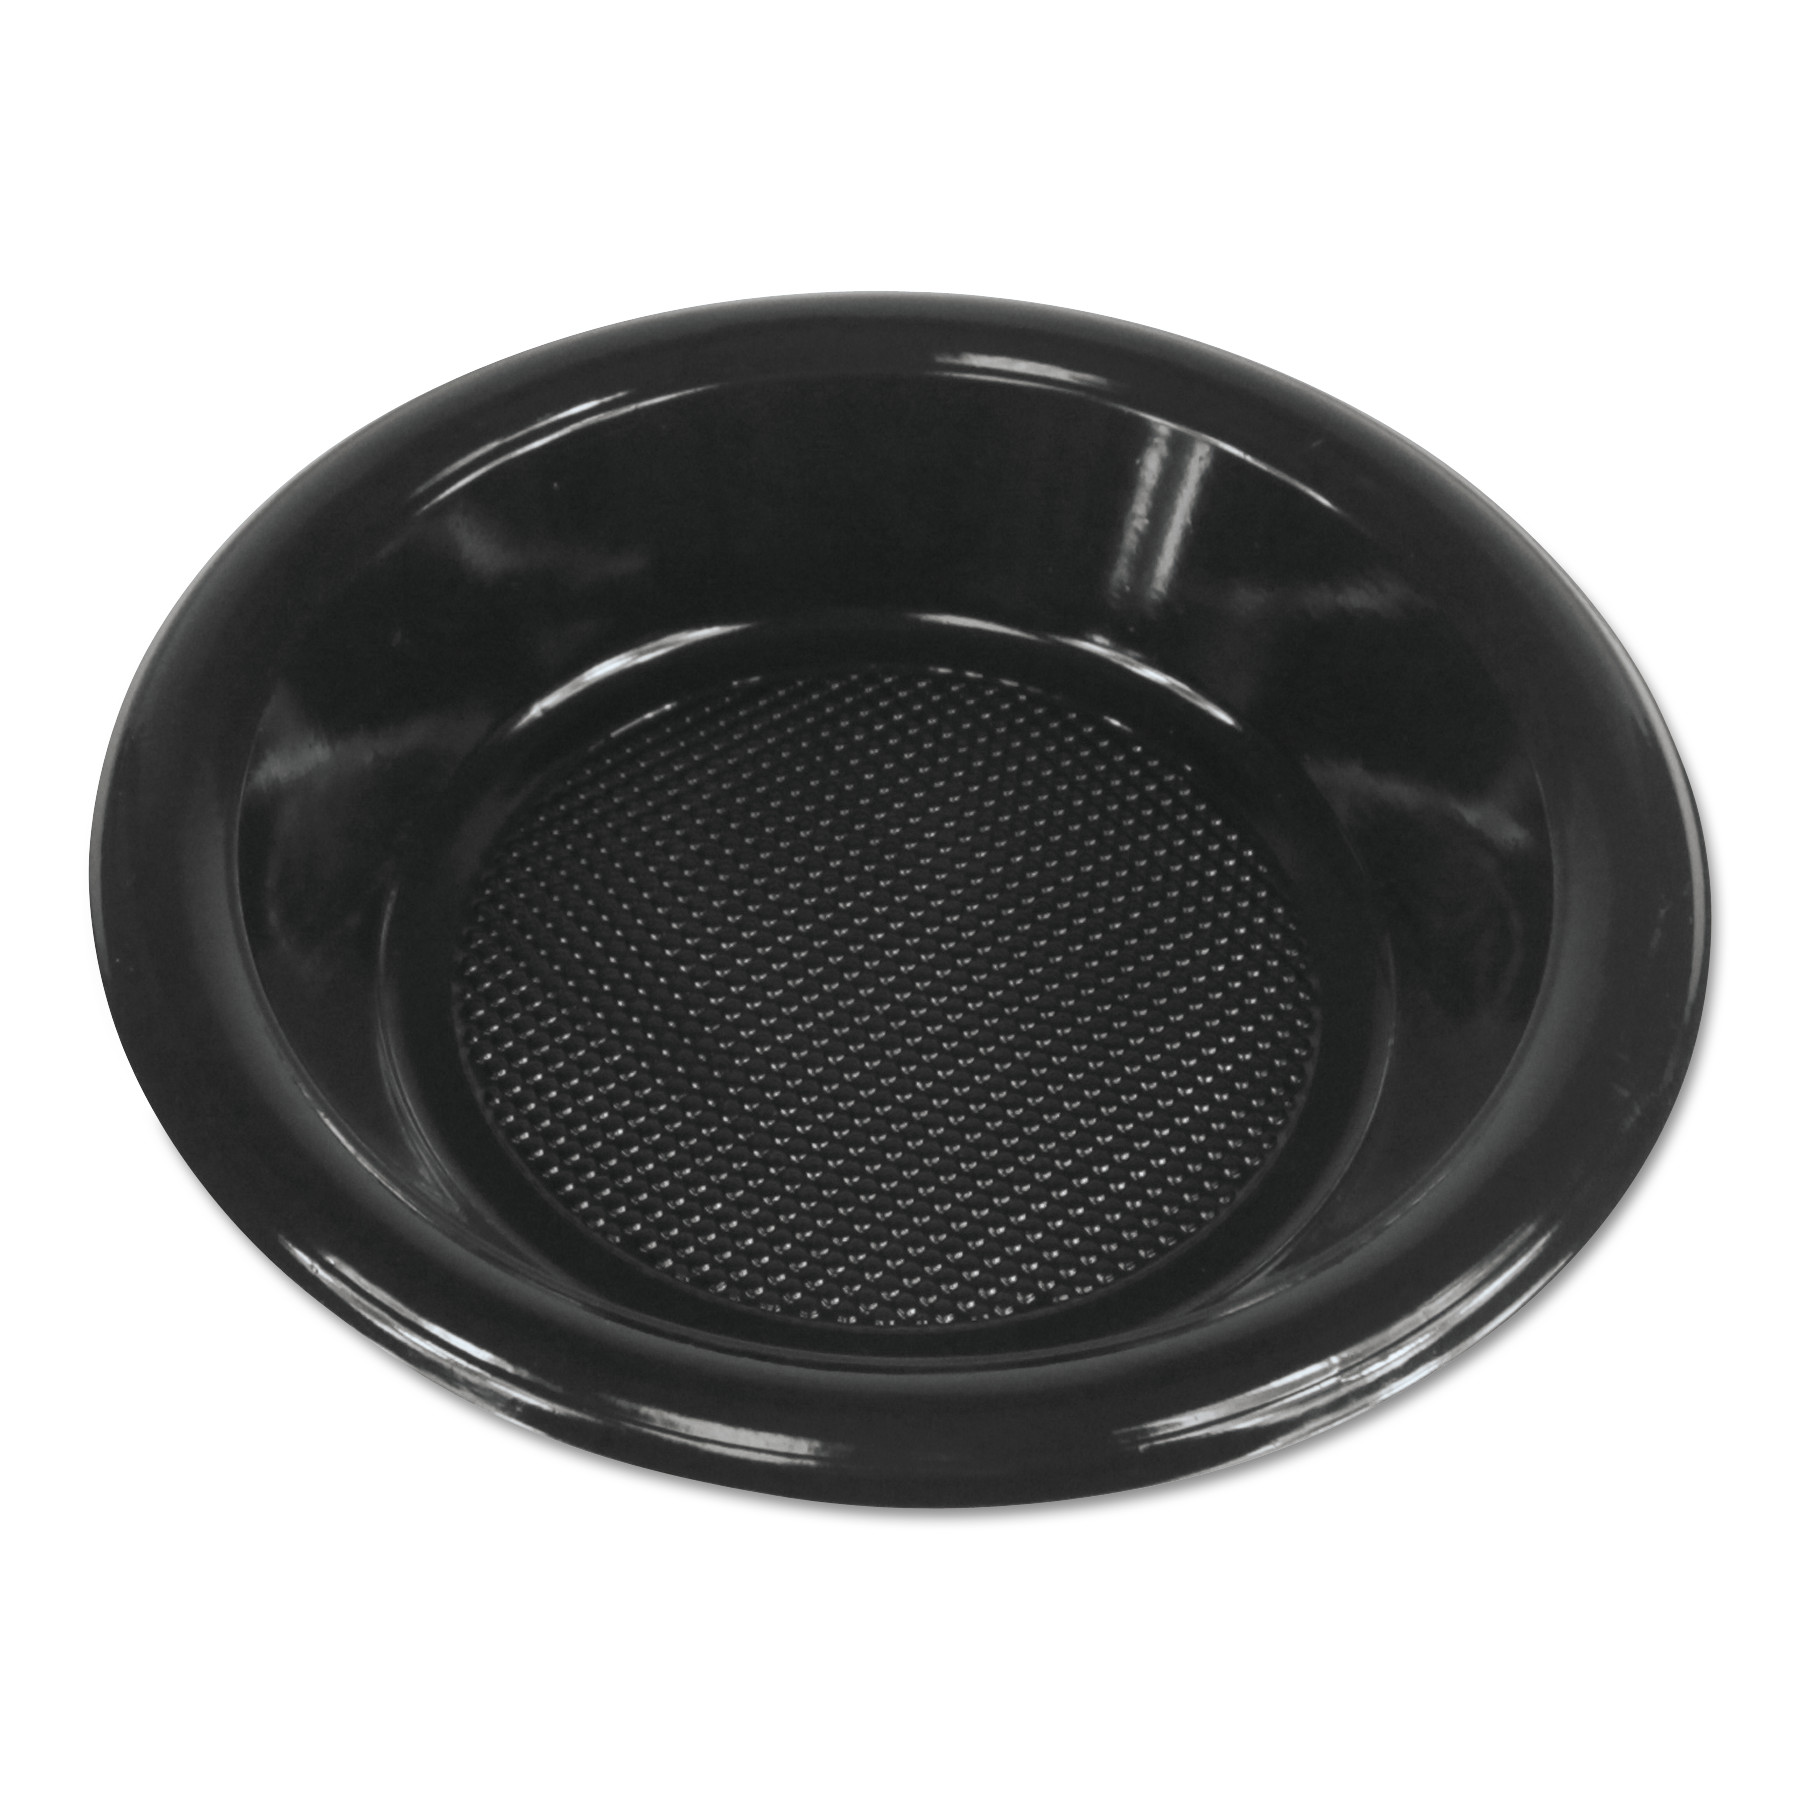 Hi-Impact Plastic Dinnerware, Bowl, 6.8 Diameter, Black, 1000/Carton